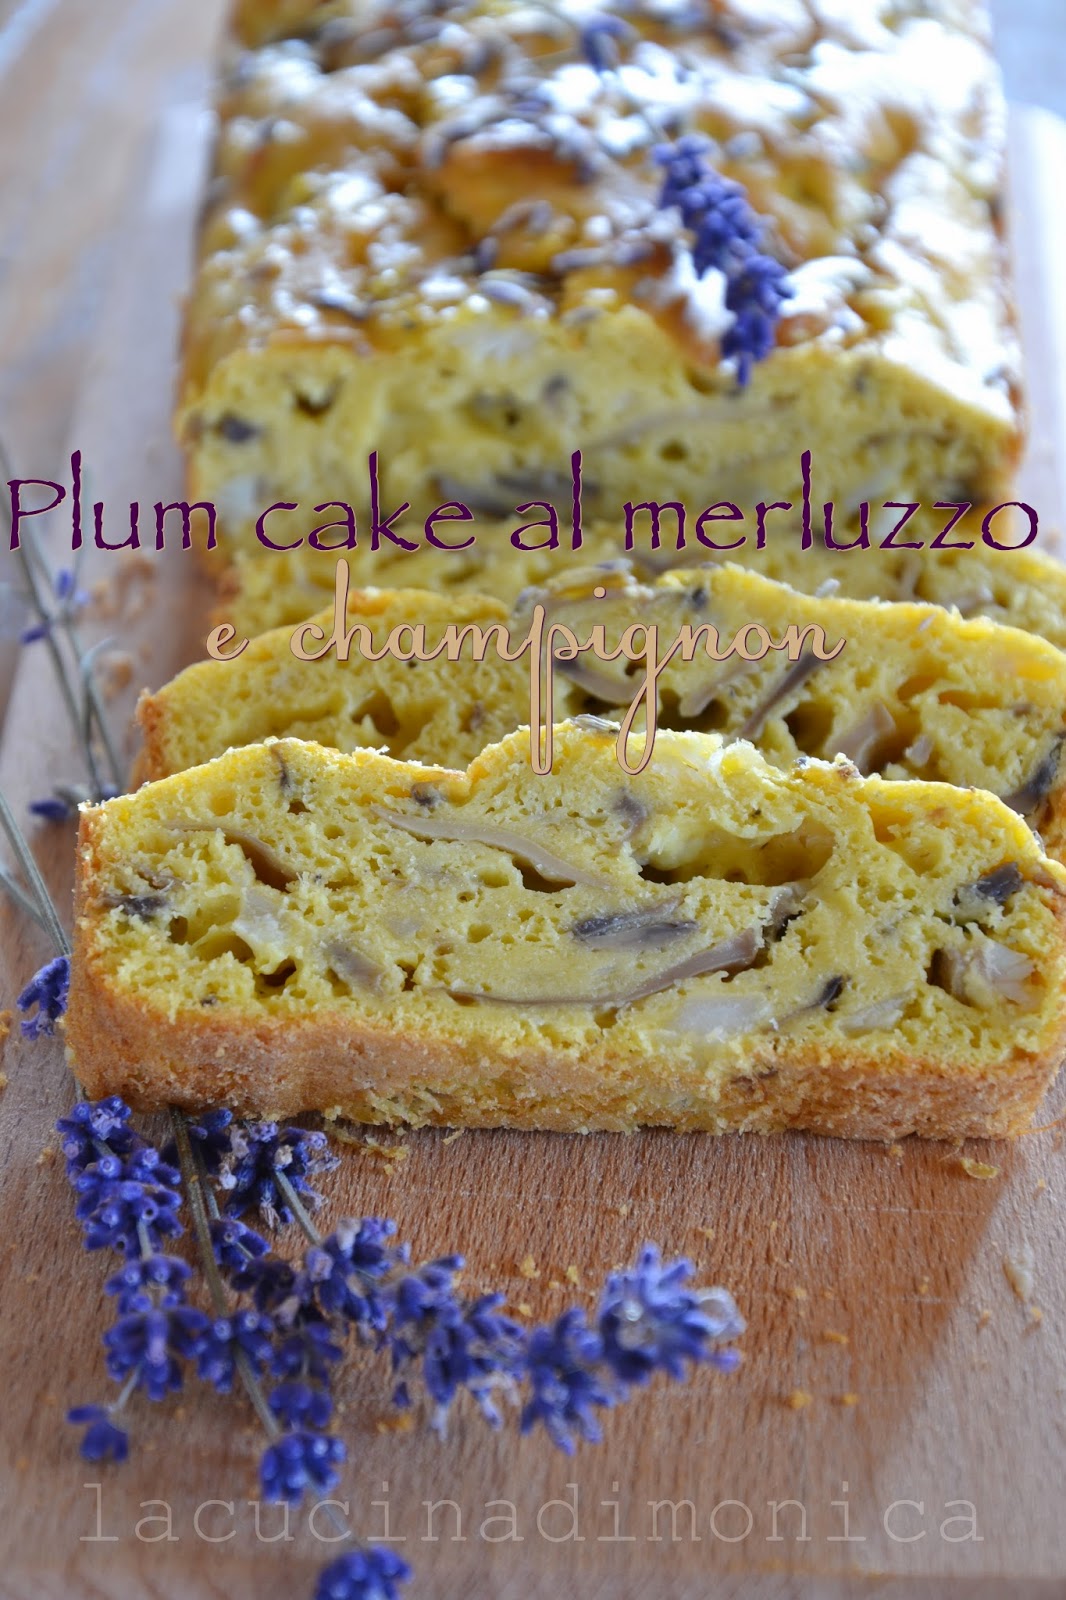 Plum cake al merluzzo e champignon